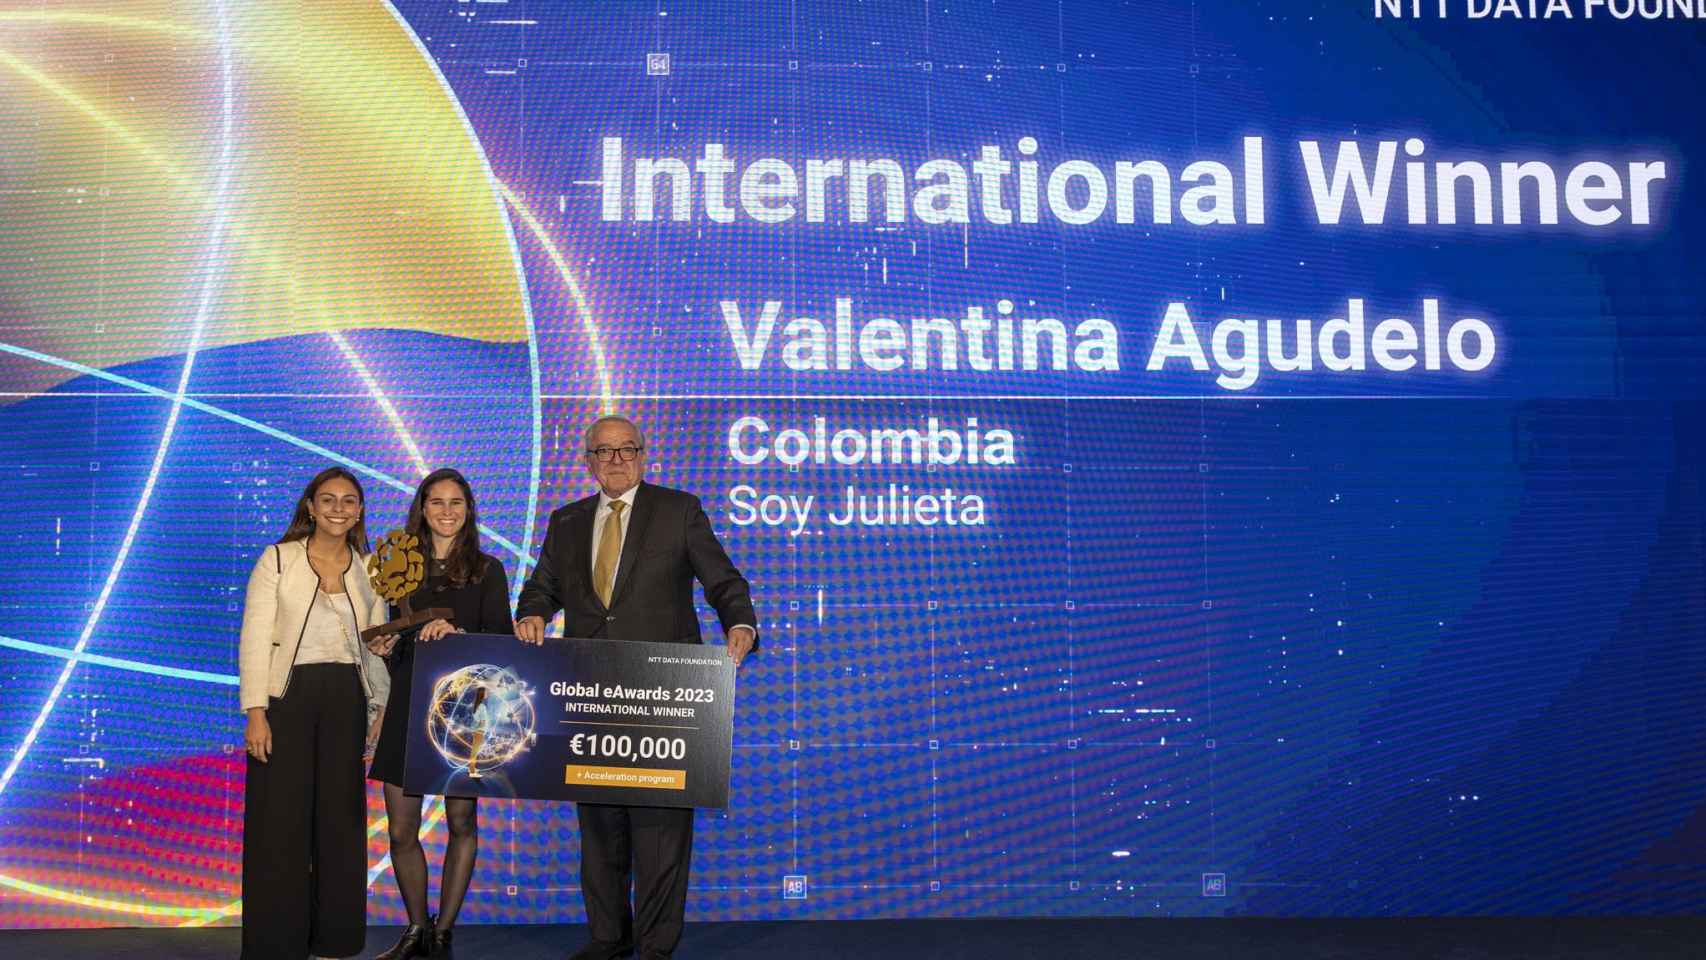 Cristina García y Valentina Agudelo, fundadoras de Soy Julieta, posan con el galardón de los Global eAwards y el presidente de NTT DATA FOUNDATION, Roberto Dañino.